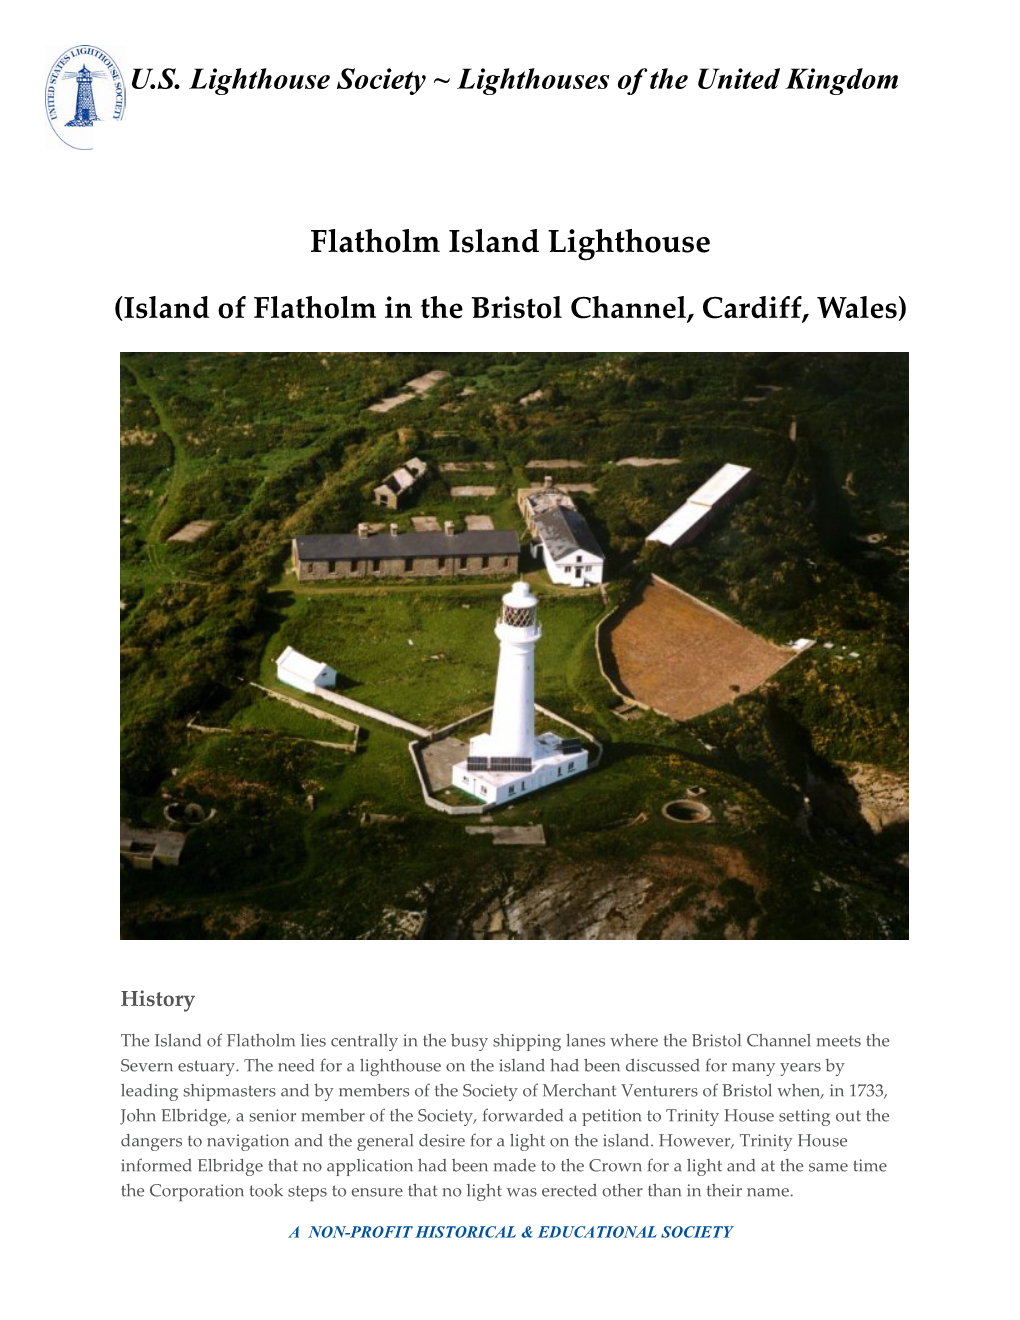 Flatholm Island Lighthouse